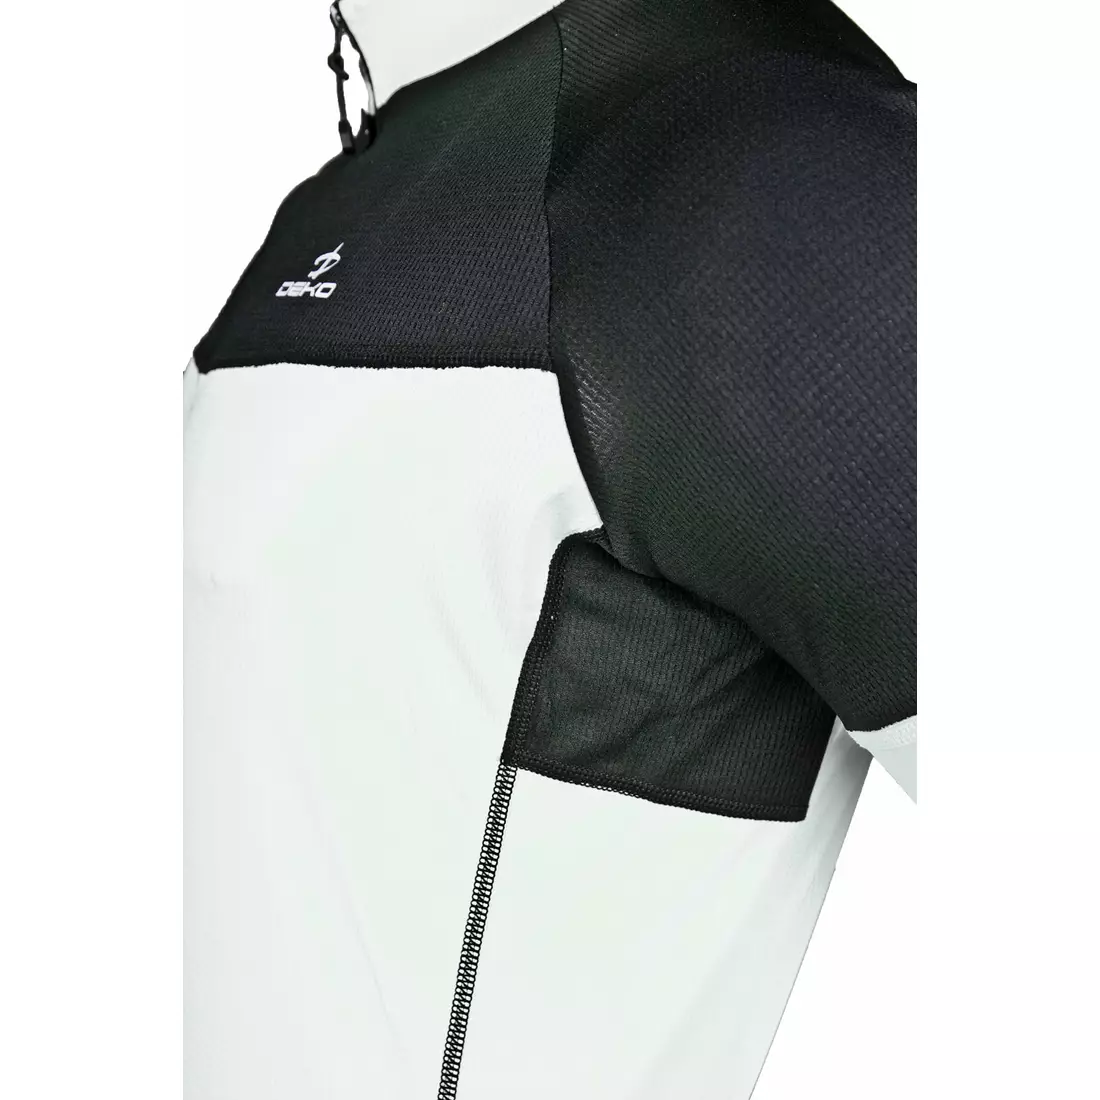 Pánský cyklistický dres DEKO FORZA, bílo-černý